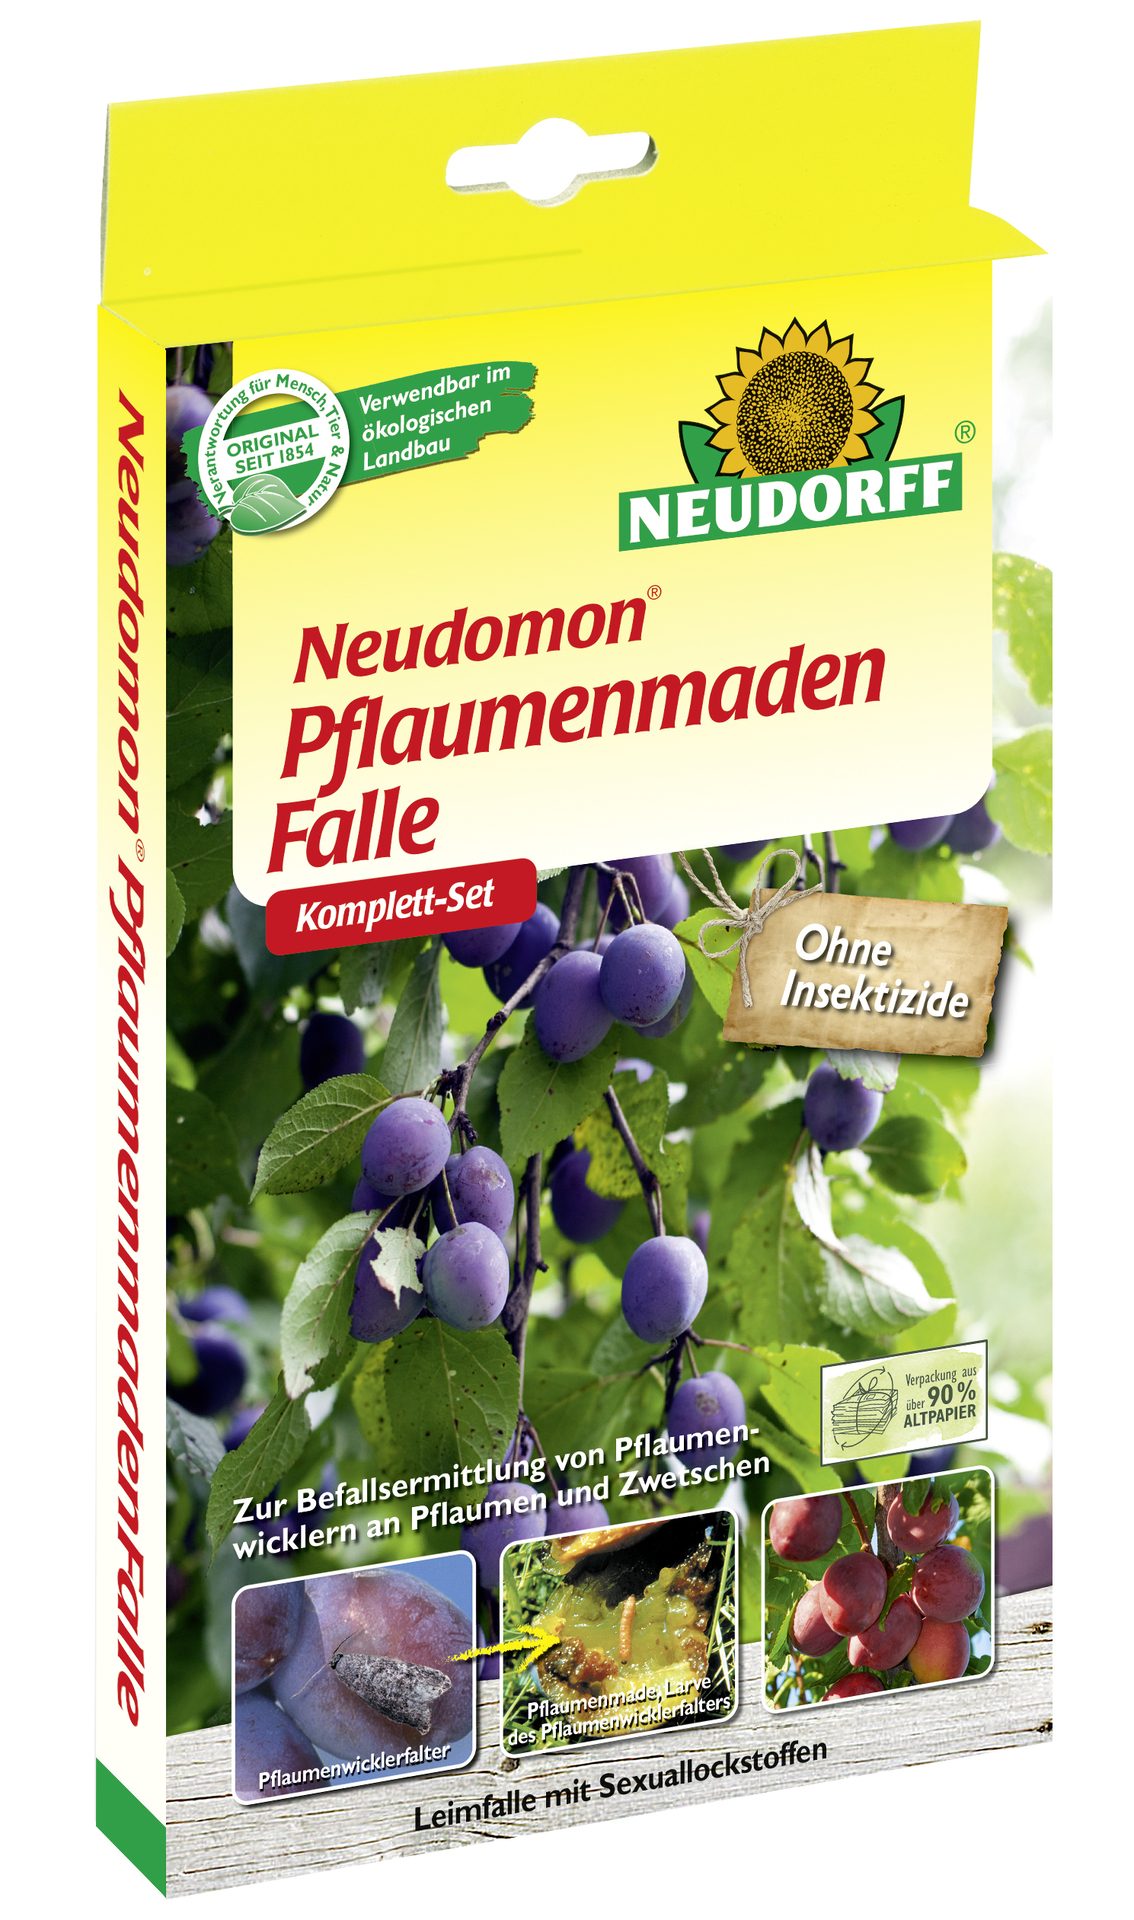 W. Neudorff GmbH KG Neudomon PflaumenmadenFalle